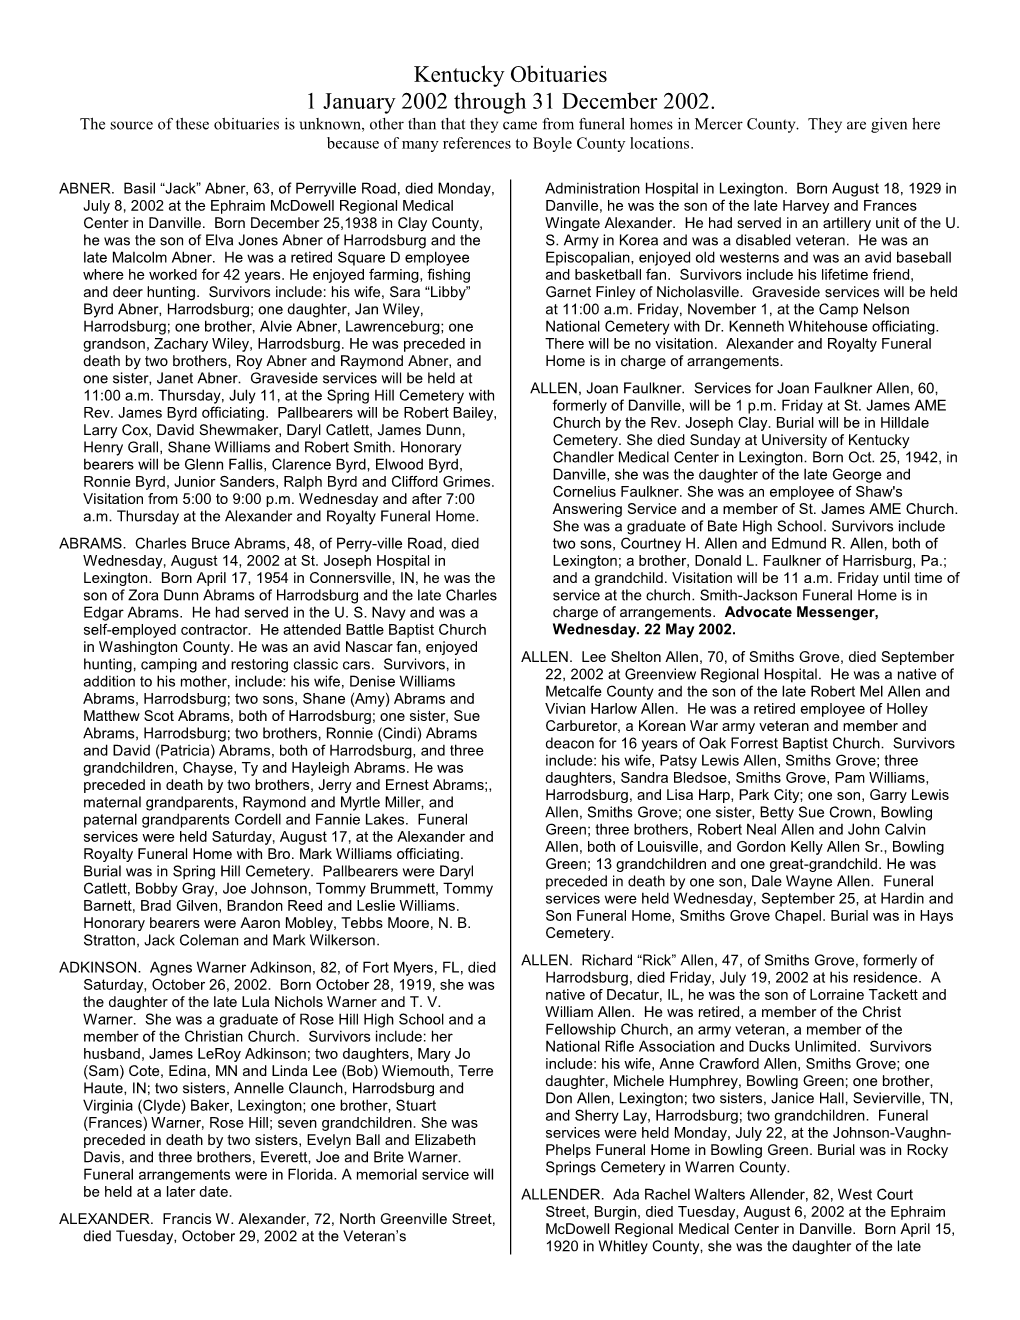 Kentucky Obituaries 1 January 2002 Through 31 December 2002